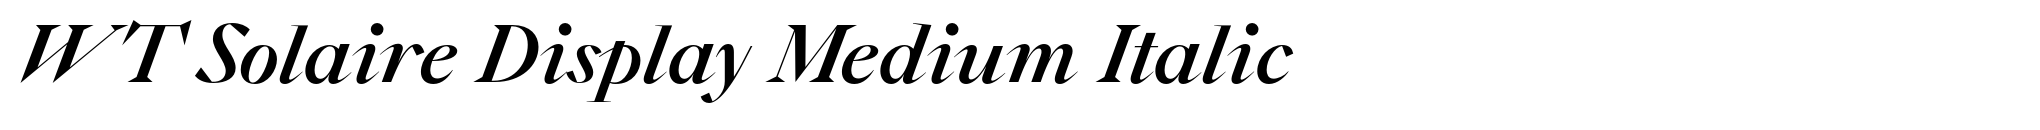 WT Solaire Display Medium Italic image